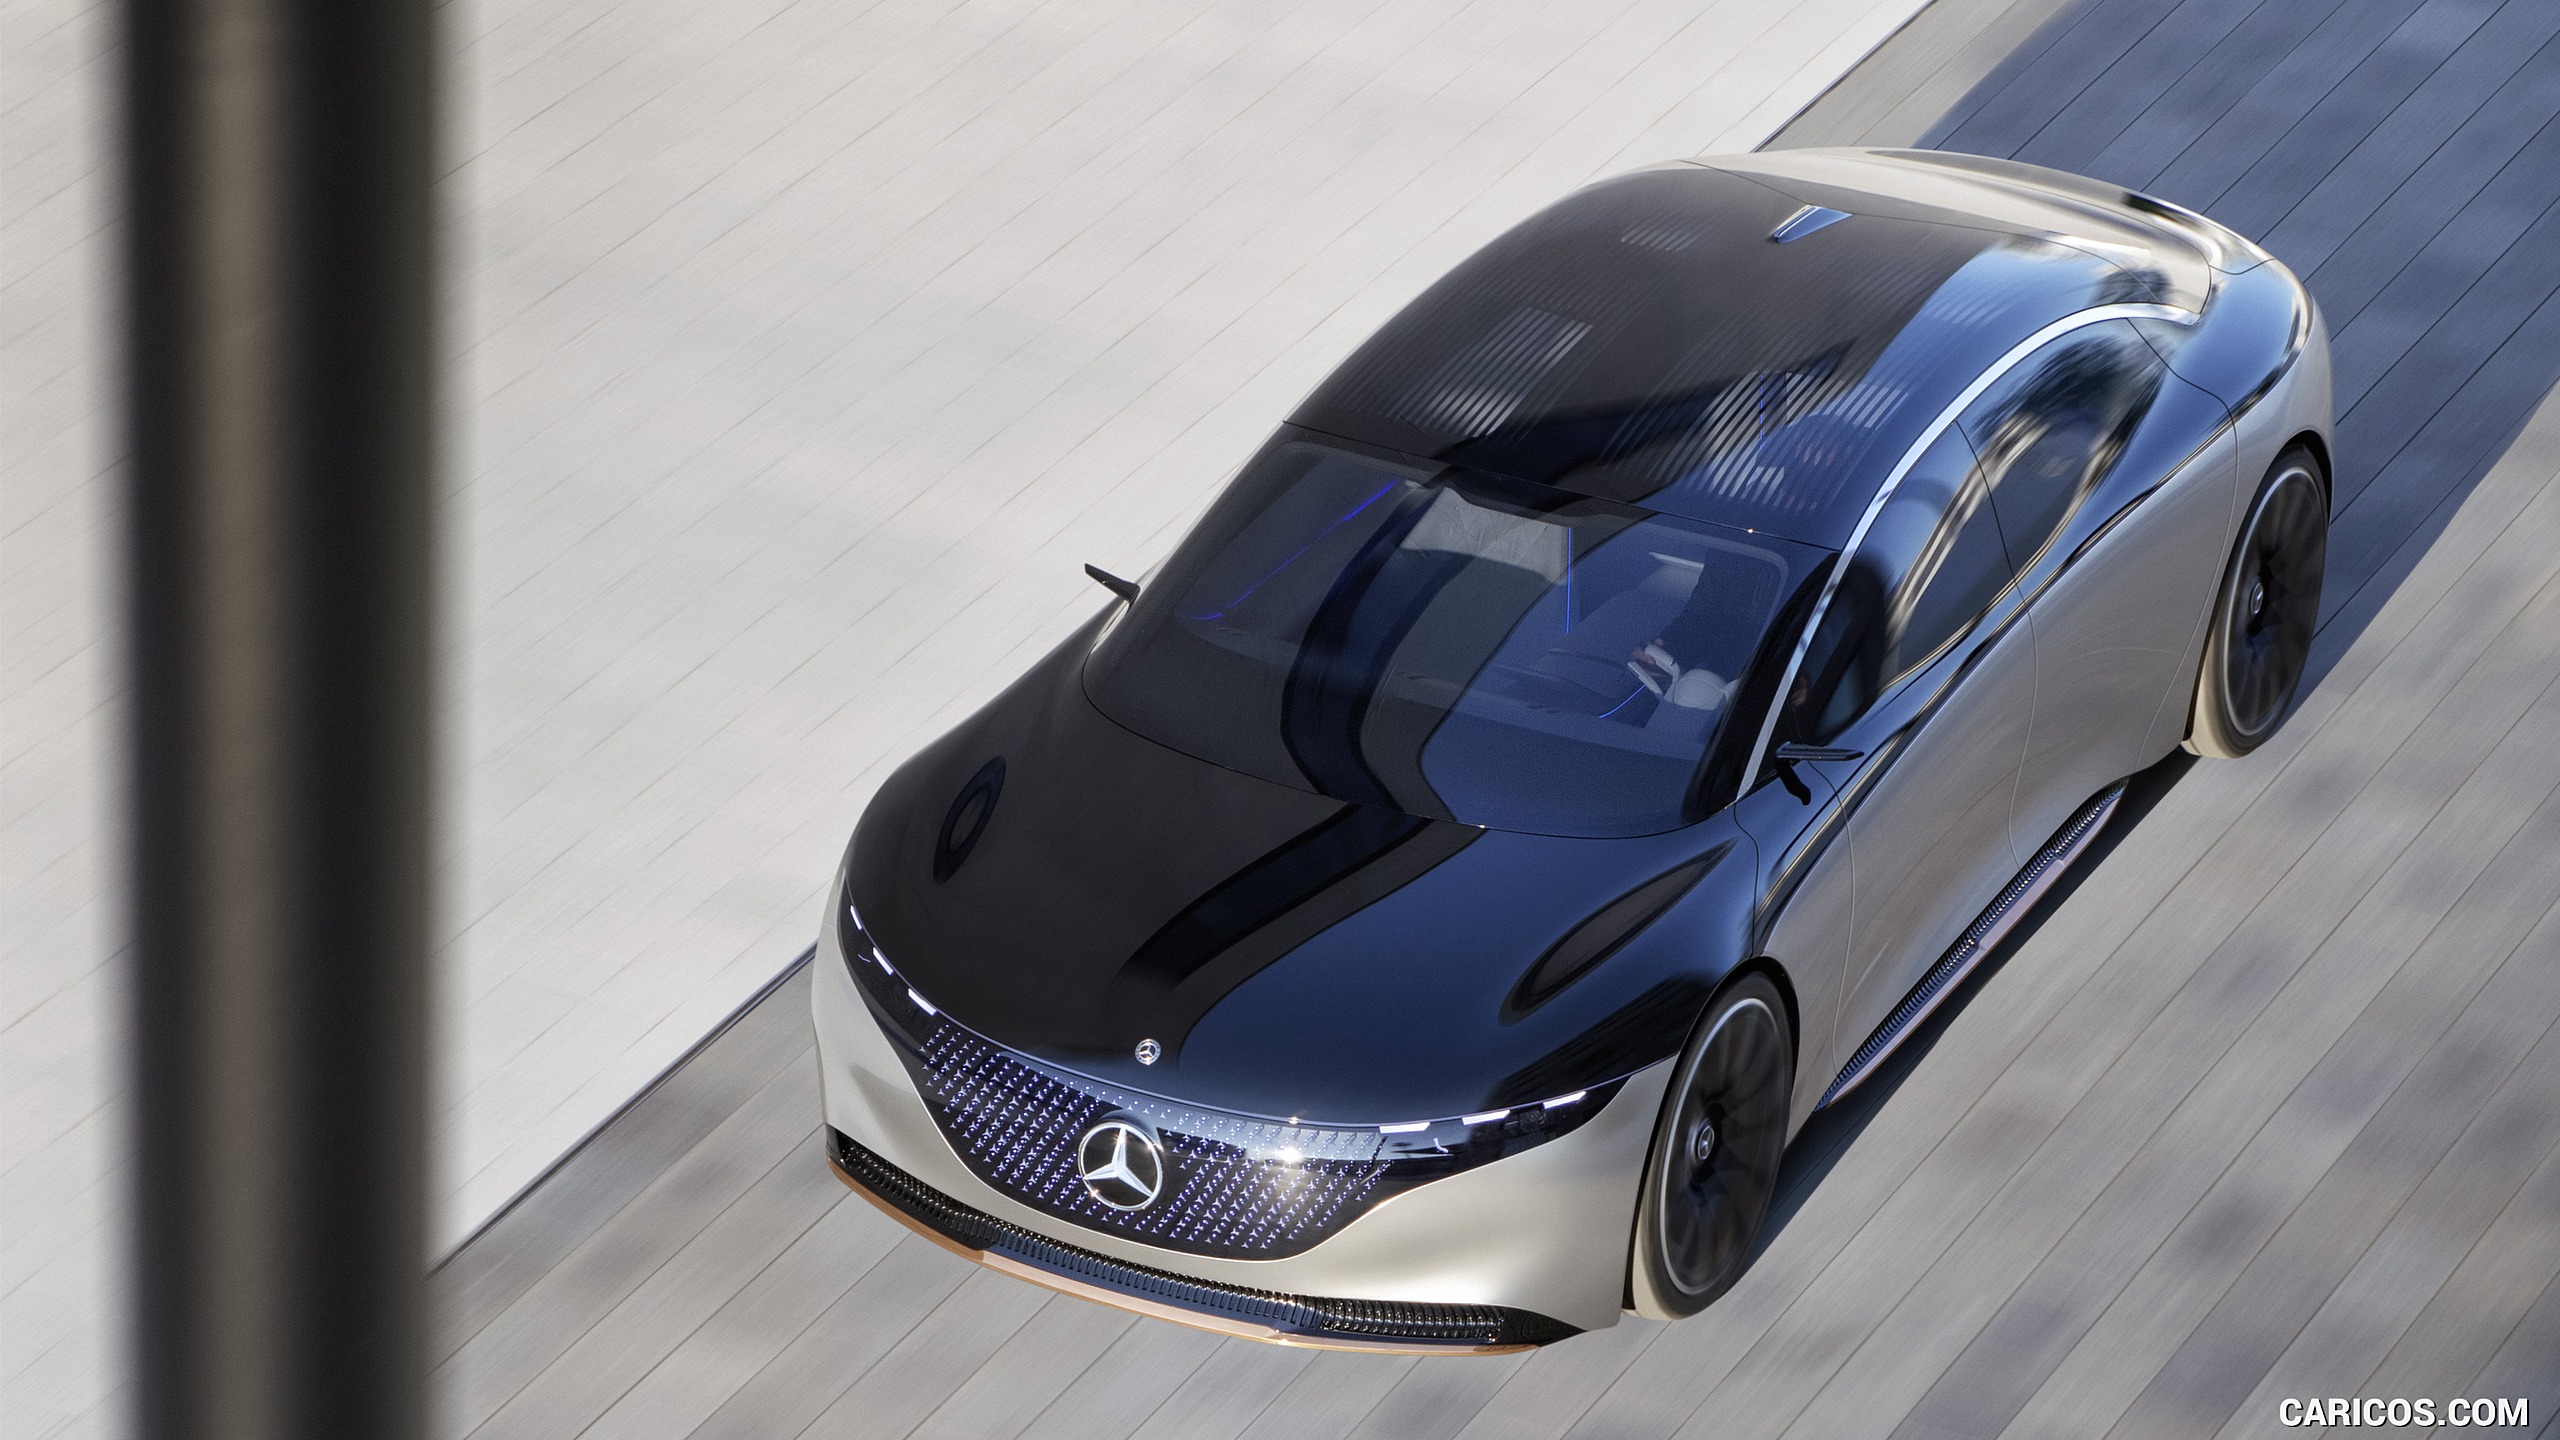 2019 Mercedes-Benz Vision EQS Concept - Top, #5 of 58